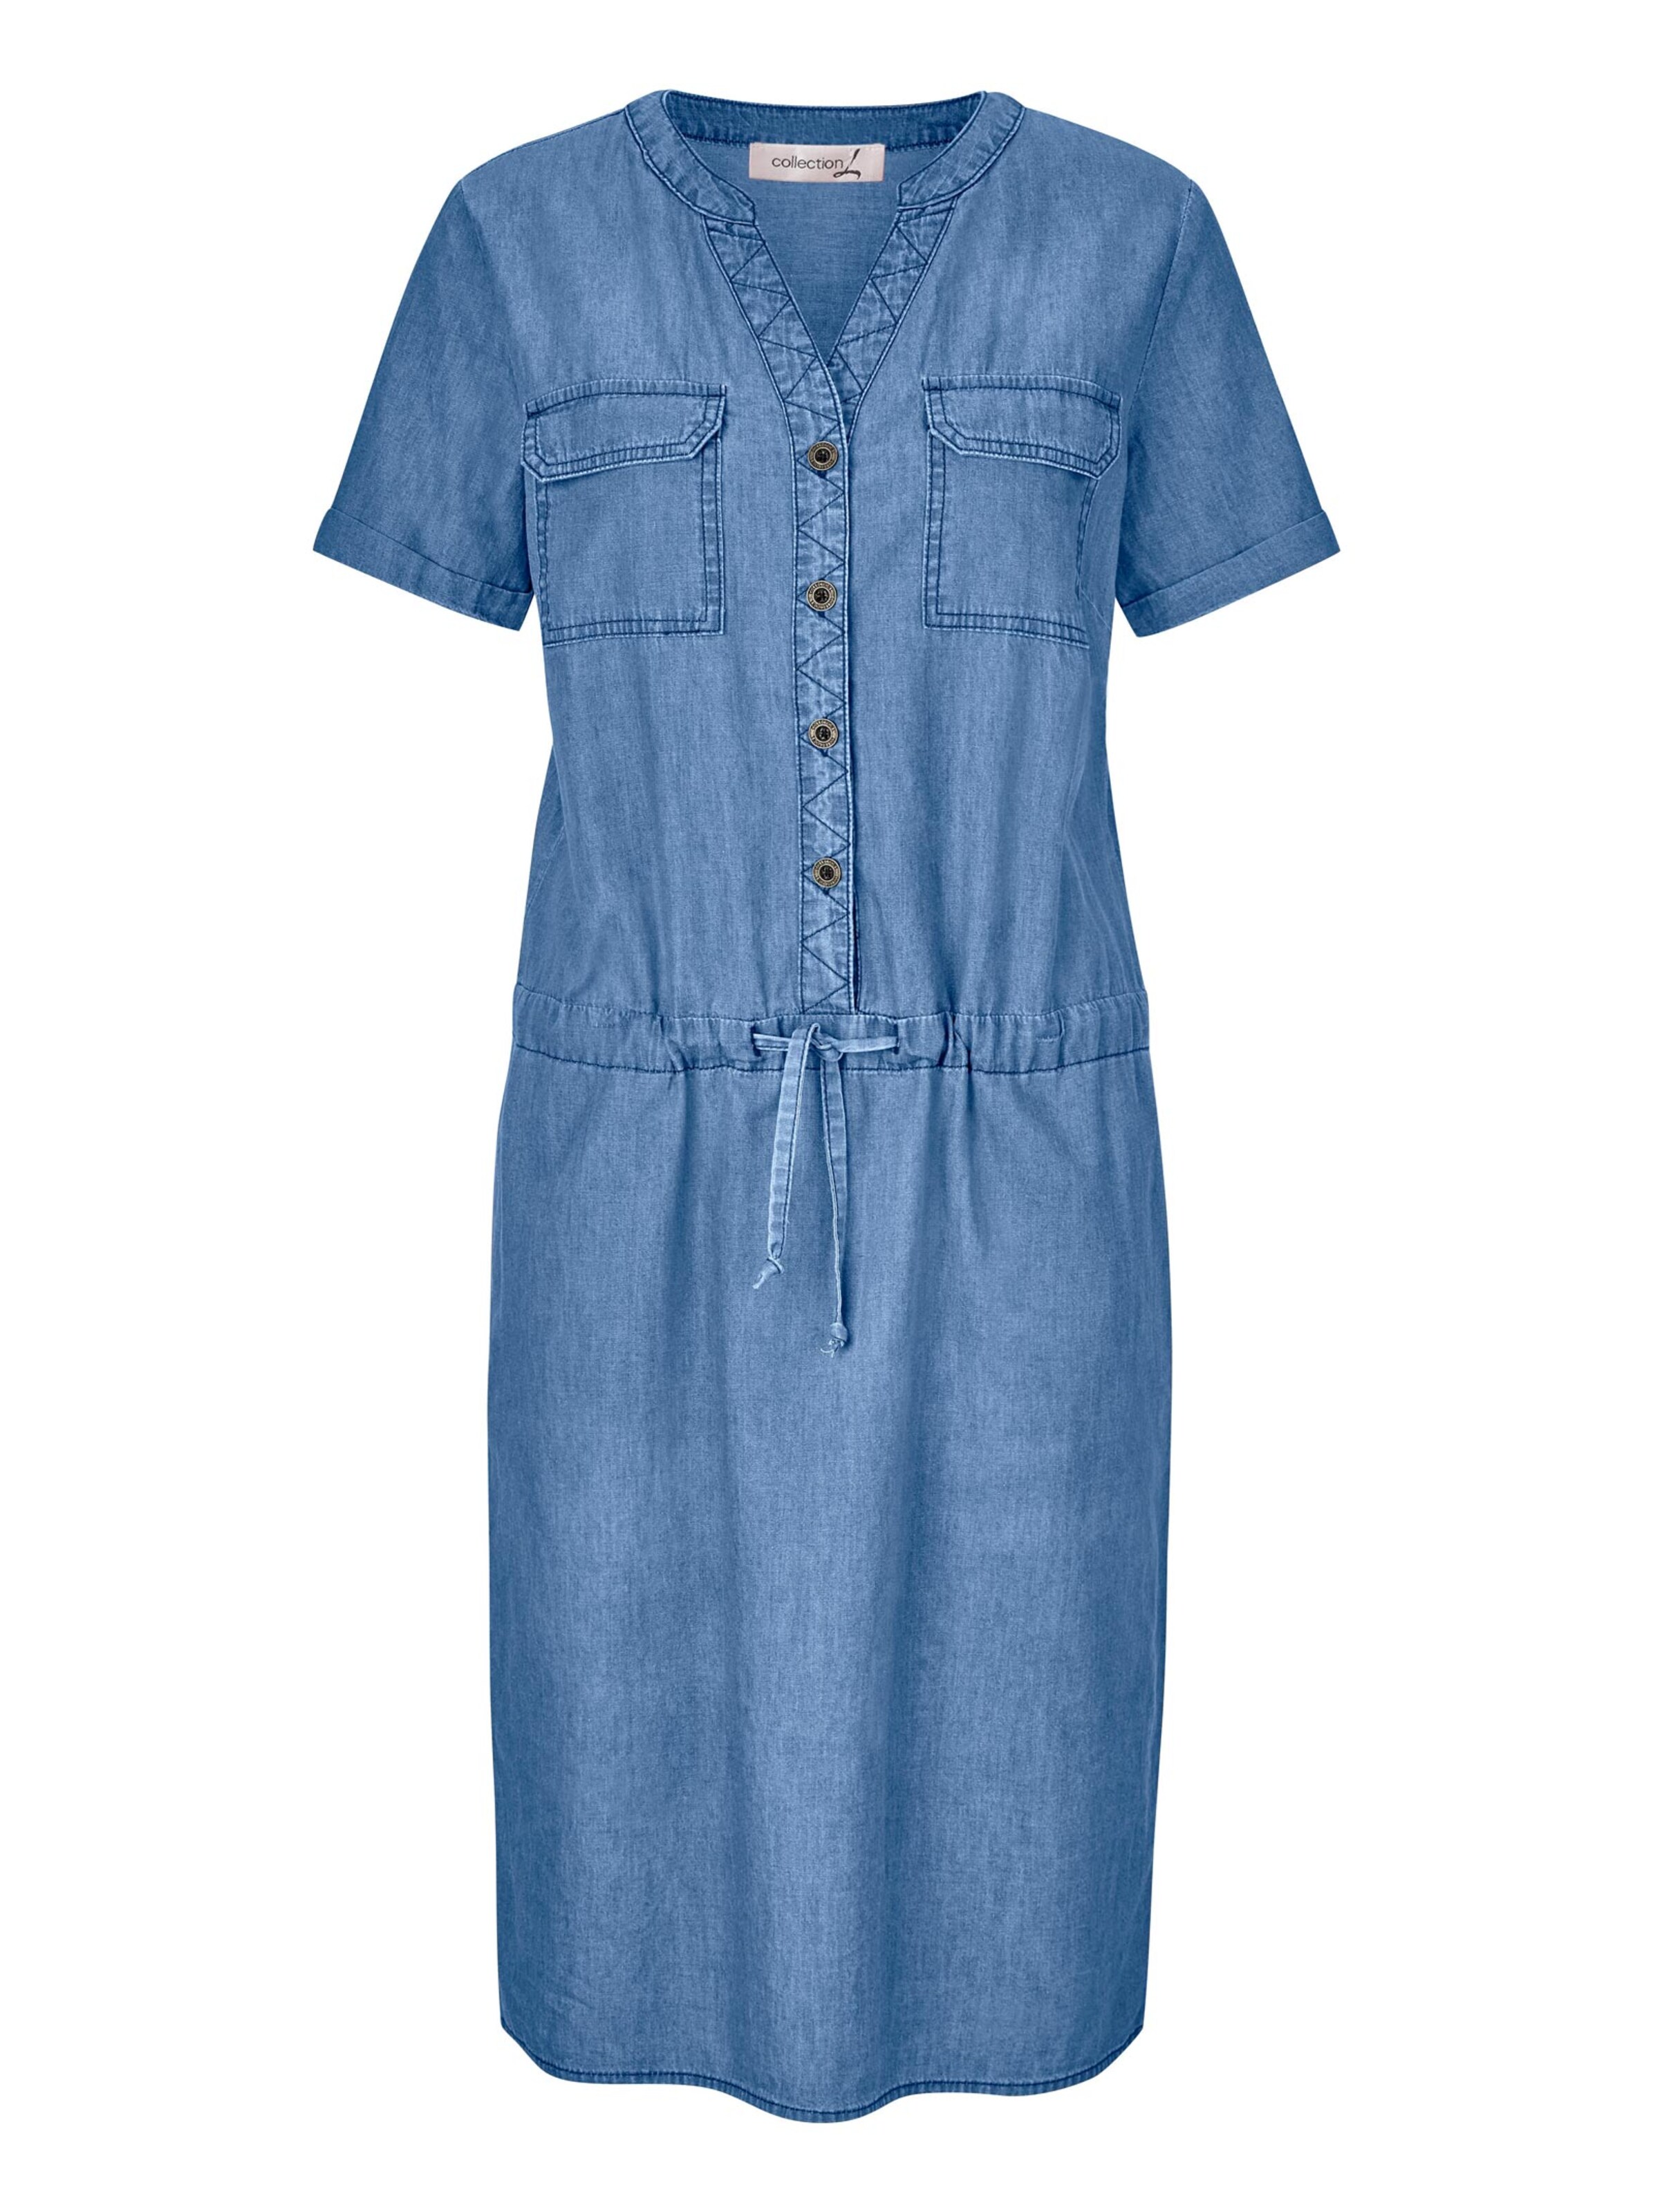 Bademode Strandkleider Blusenkleid in blue-bleached 